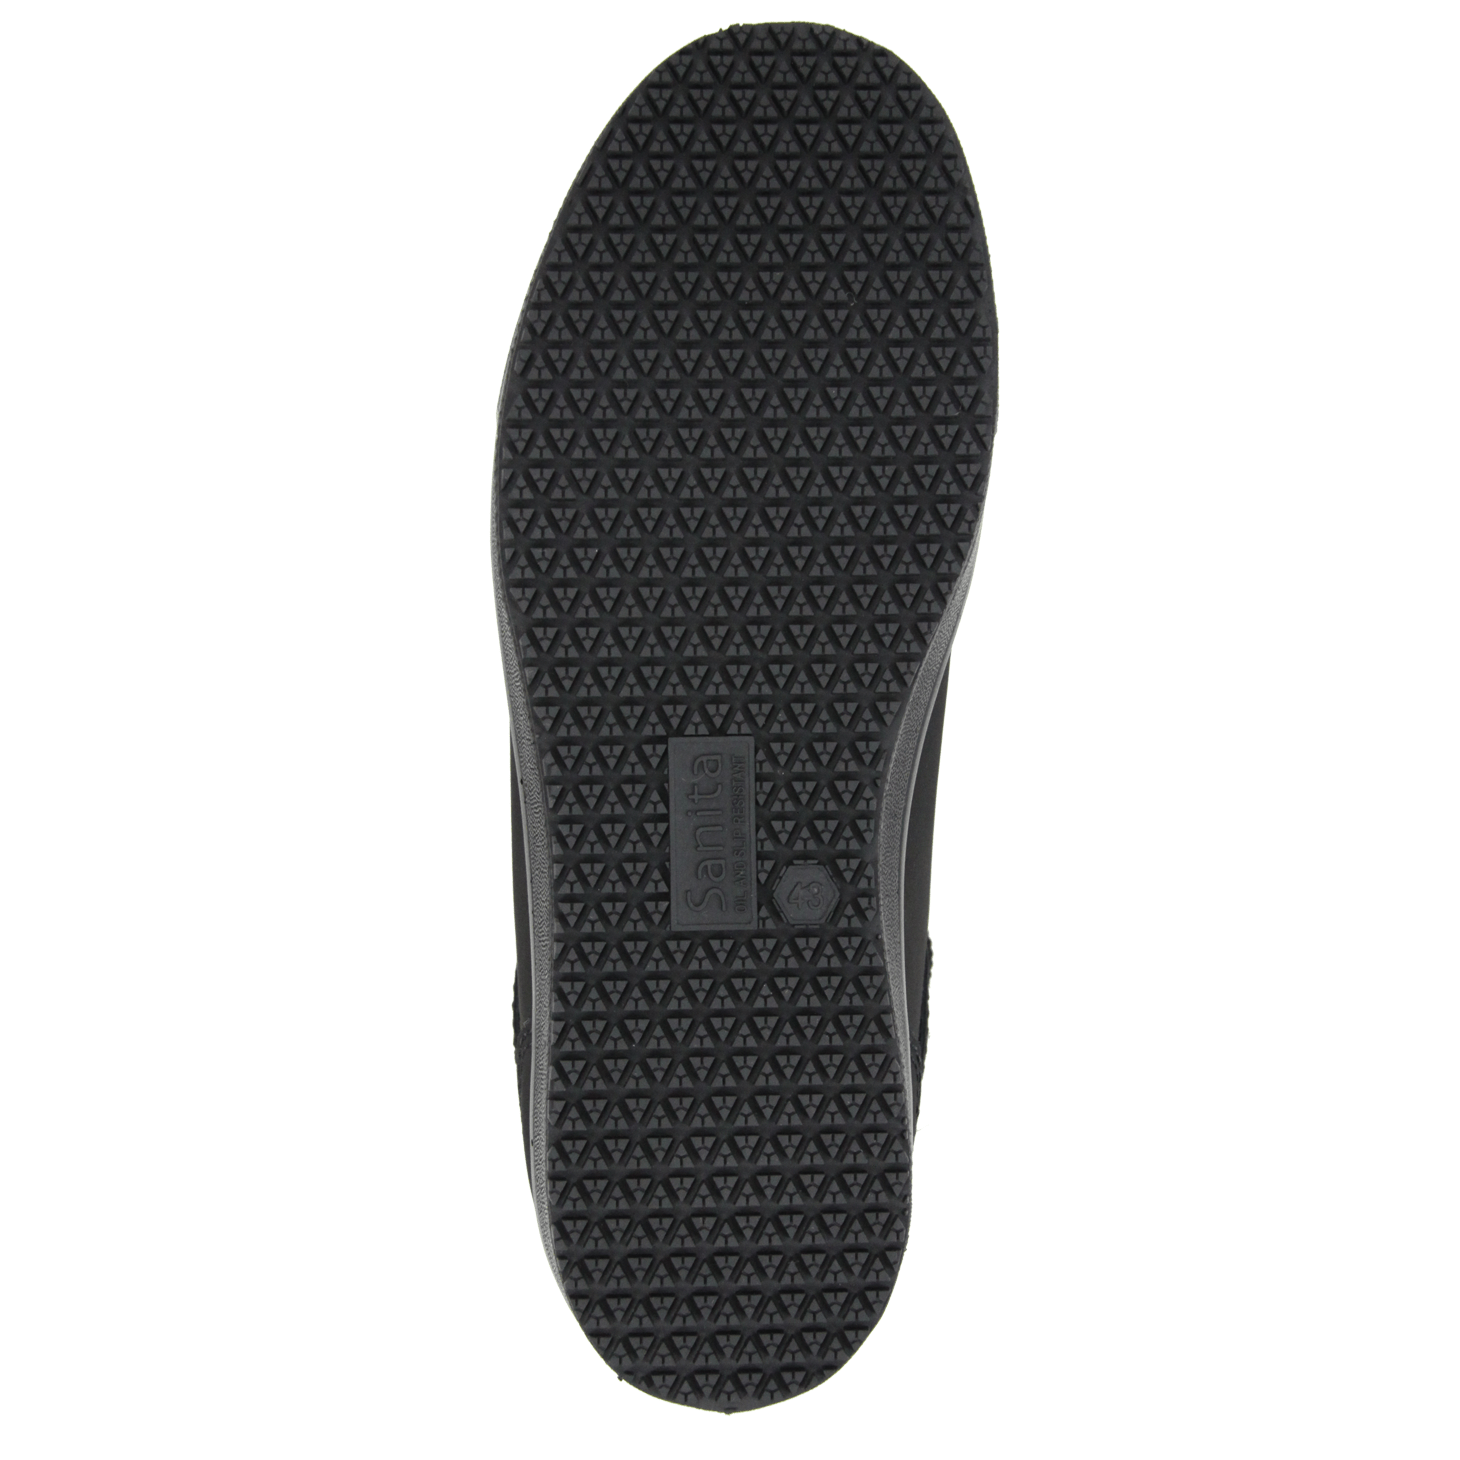 Umami Shoe